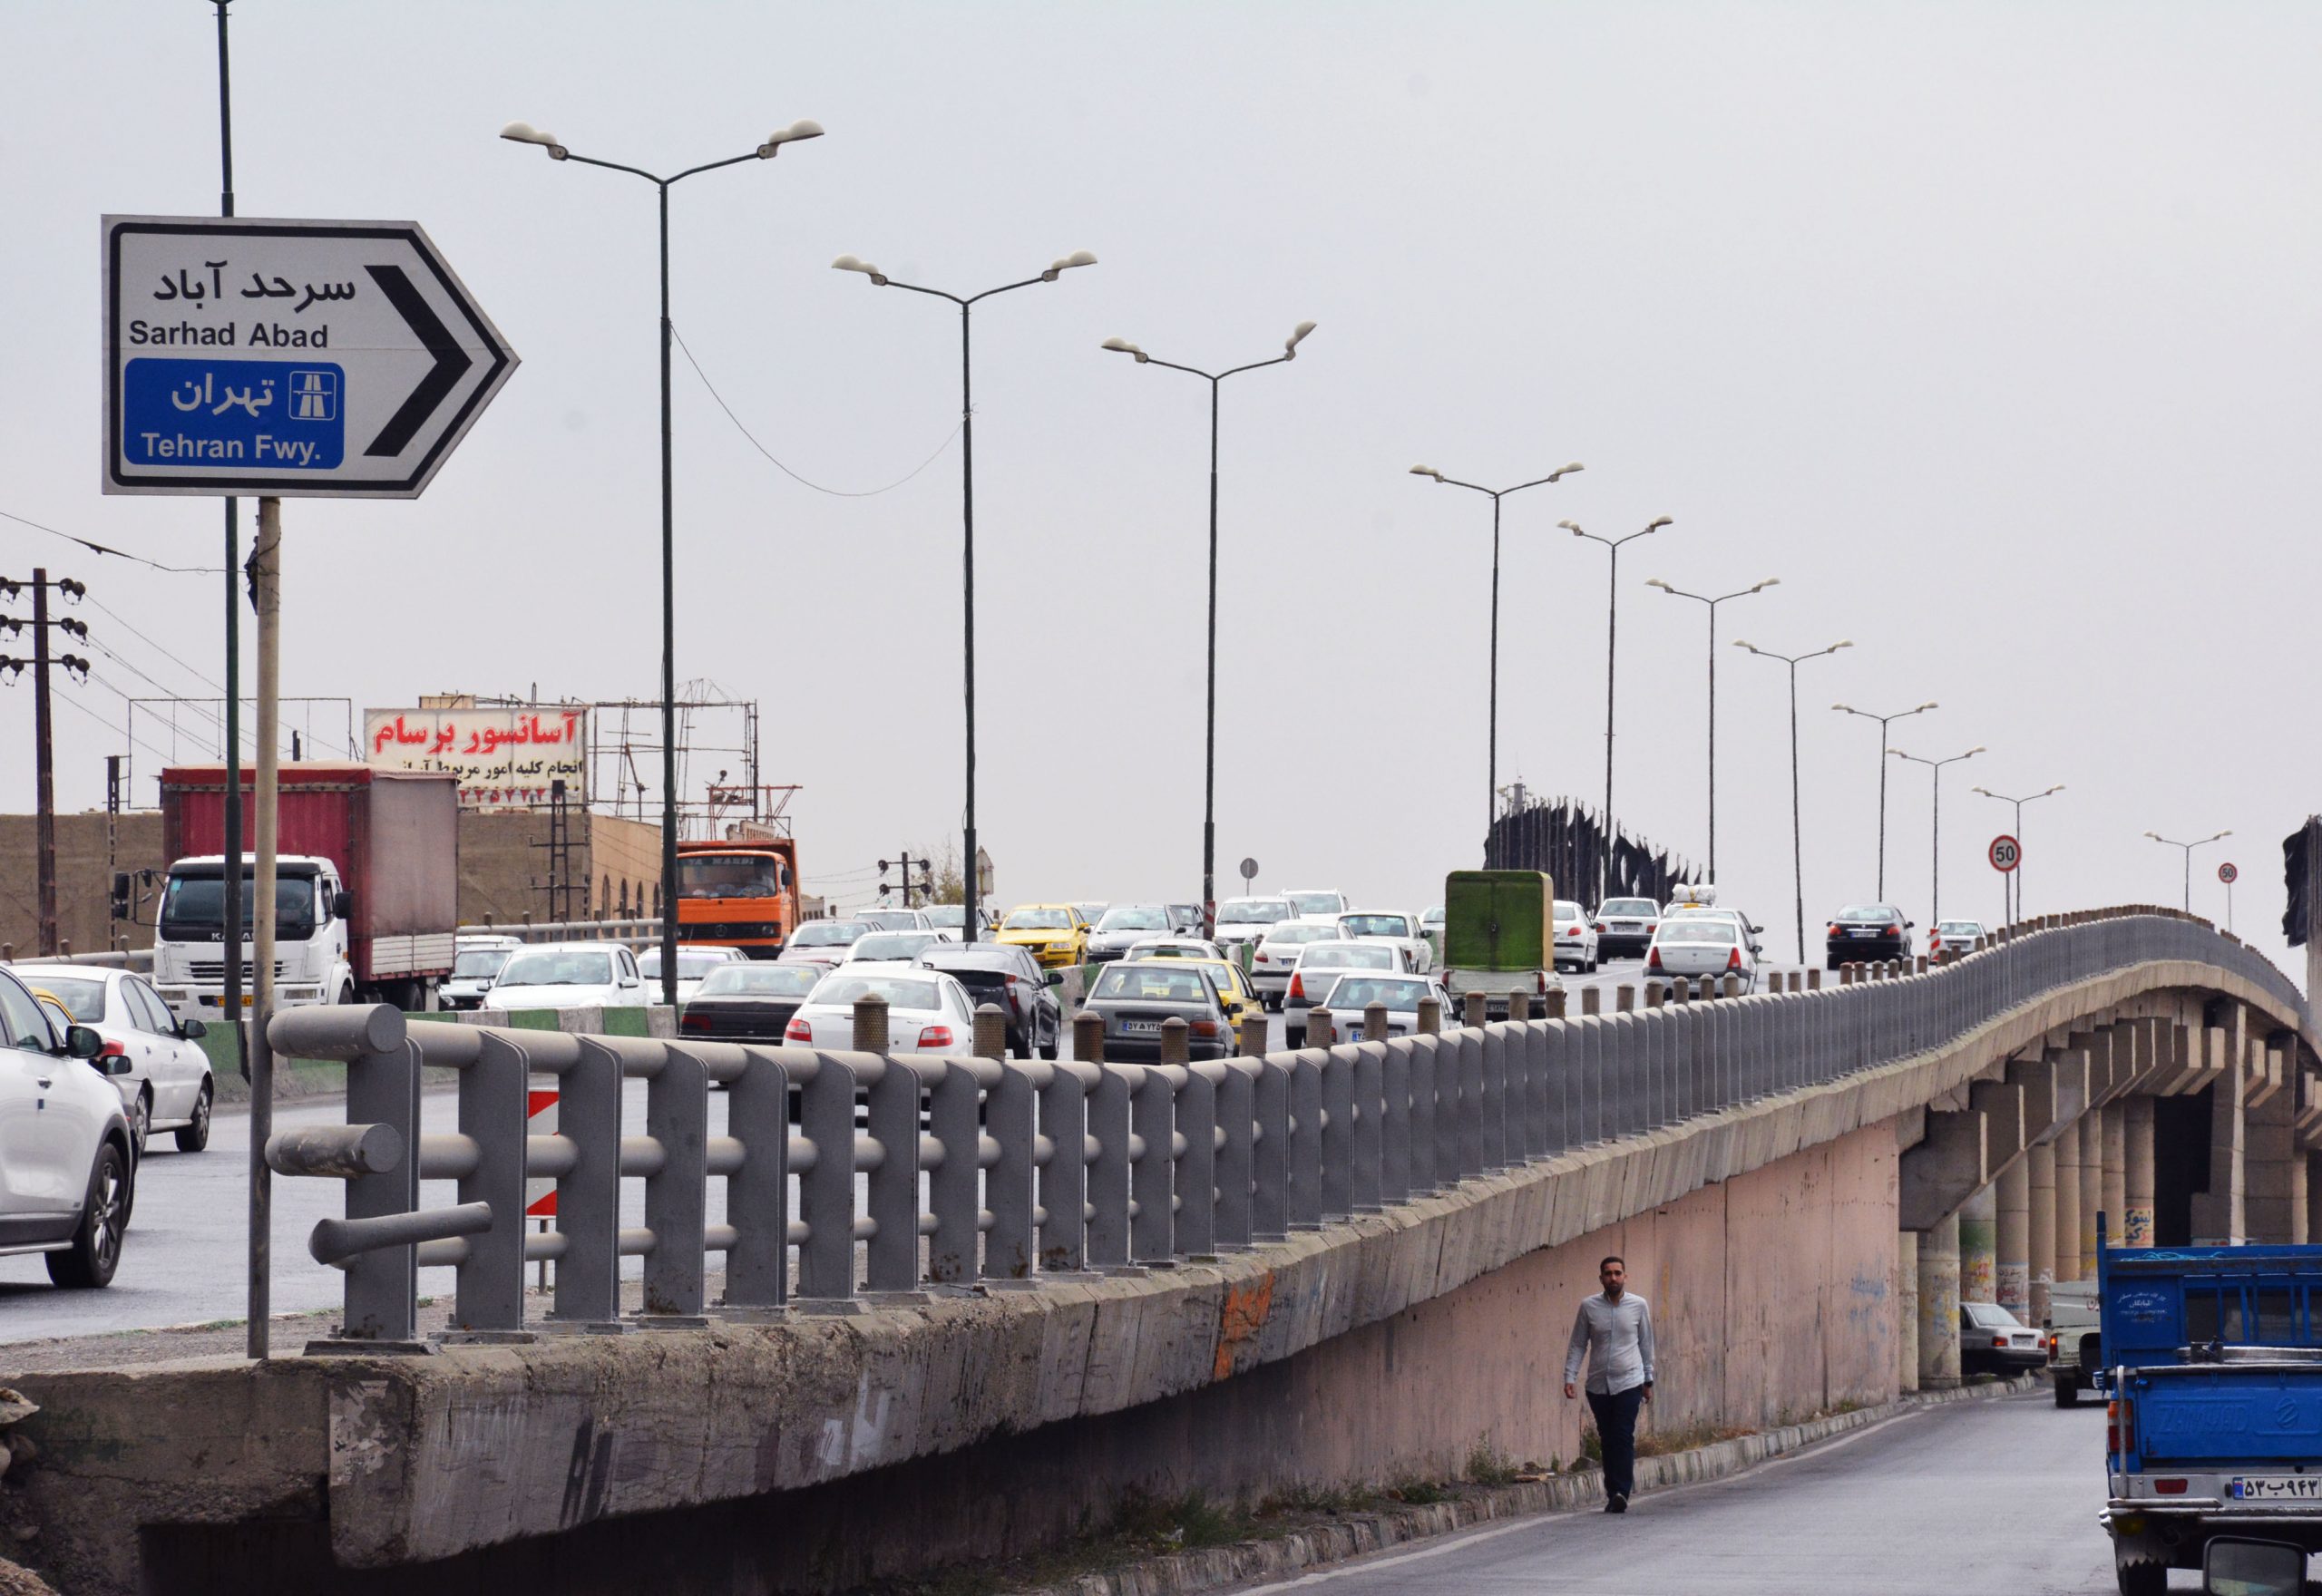 مردم سرحدآباد از شر ترافیک خلاص می شوند/ طرح تعریض ۴ میلیاردی یک زیرگذر